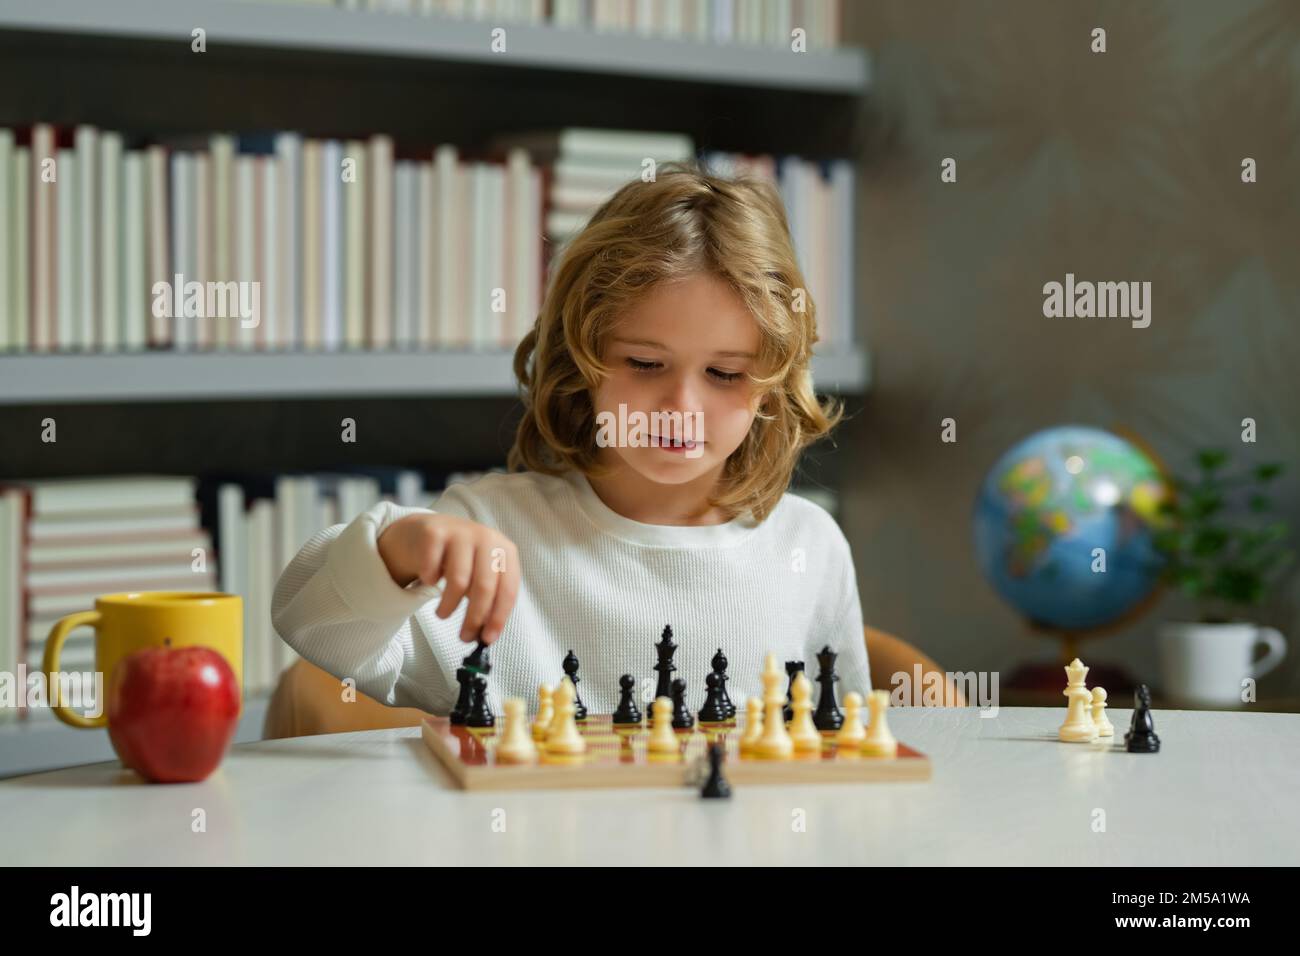 Kleines Kind spielt Schach. Kind spielt Brettspiel. Denk-Kind-Brainstorming und Idee im Schachspiel. Schachschule und Bildungskonzept. Stockfoto